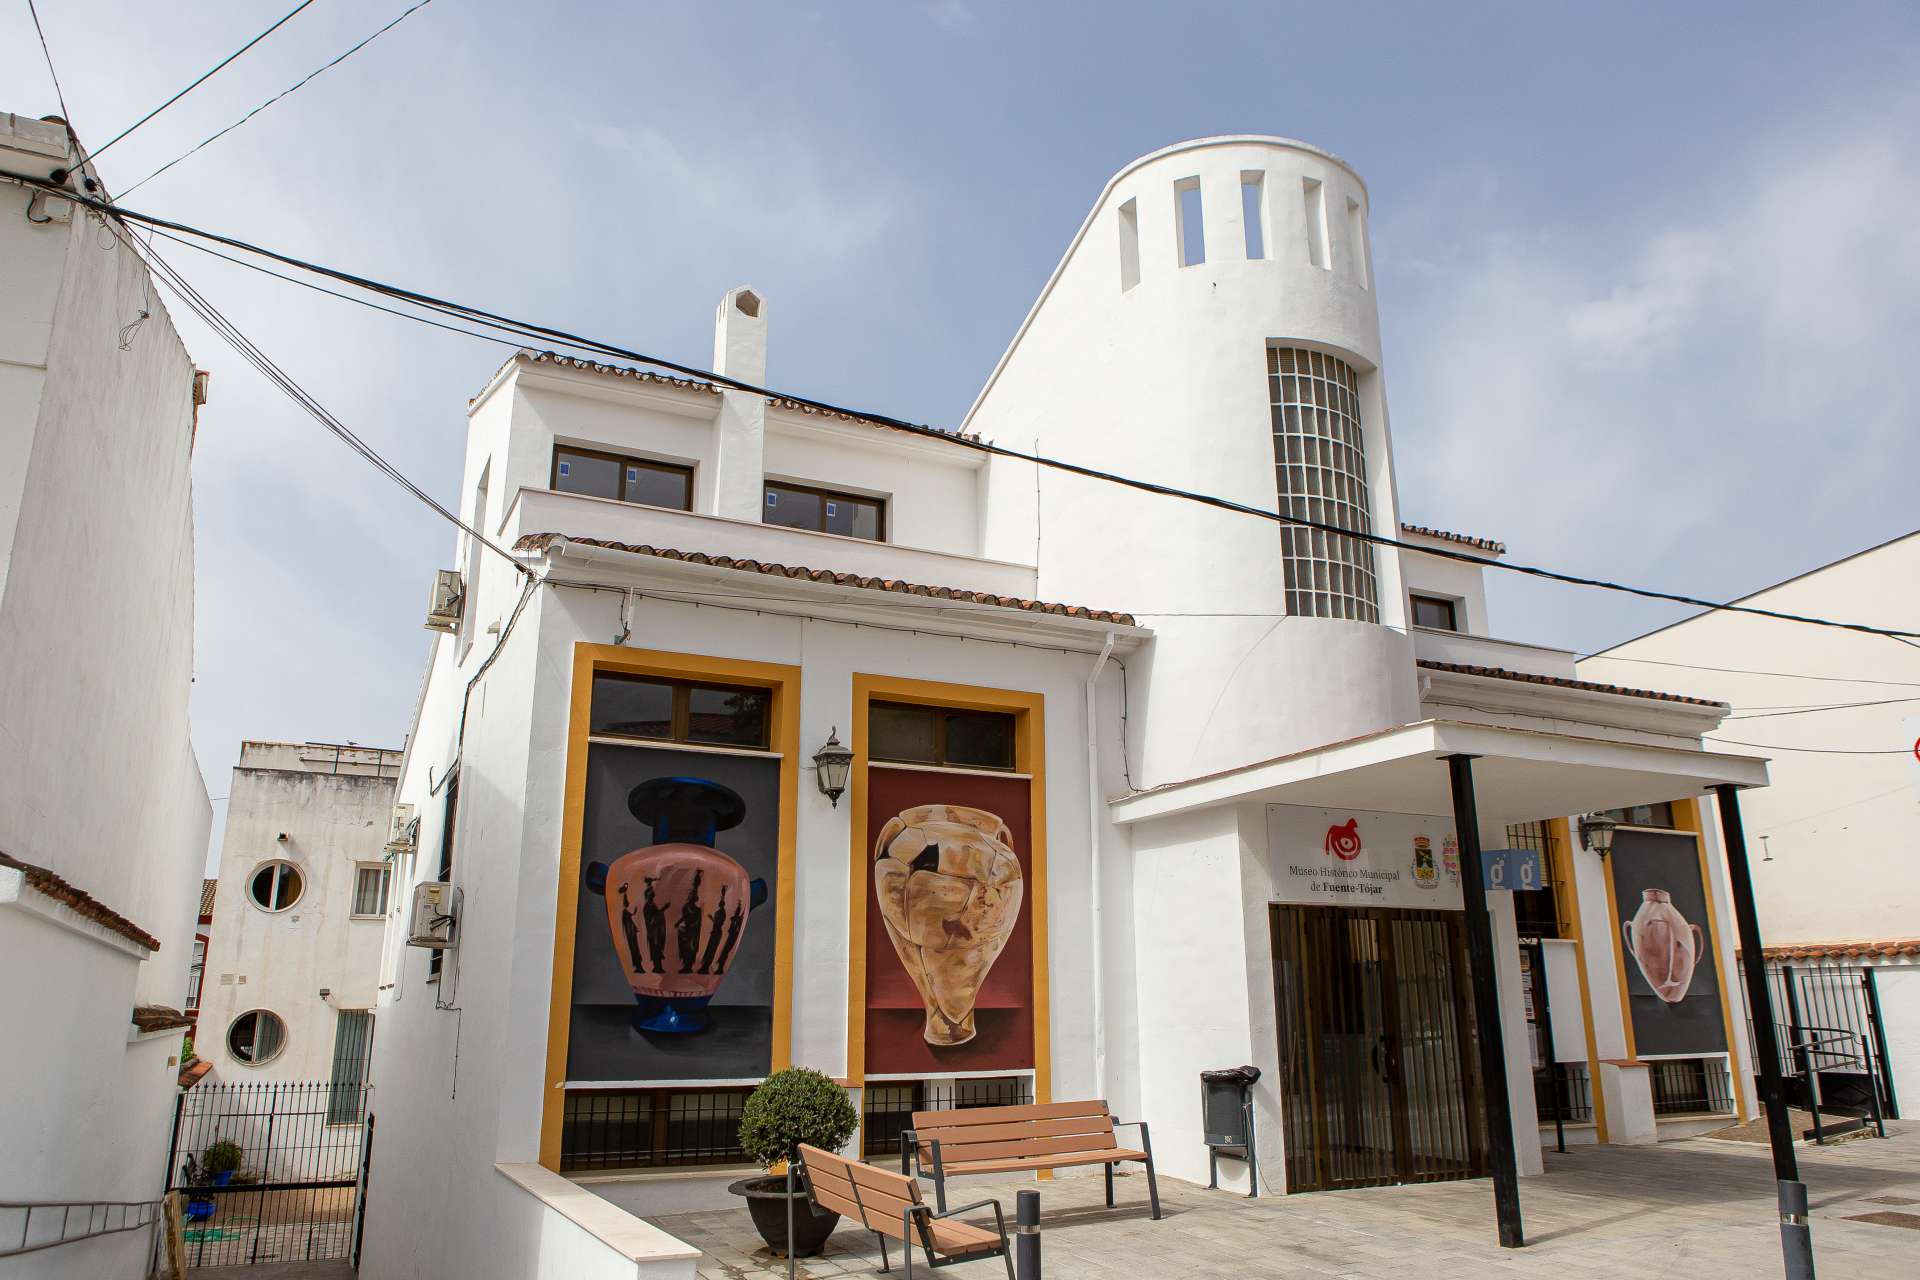 Städtisches Historisches Museum von Fuente Tójar